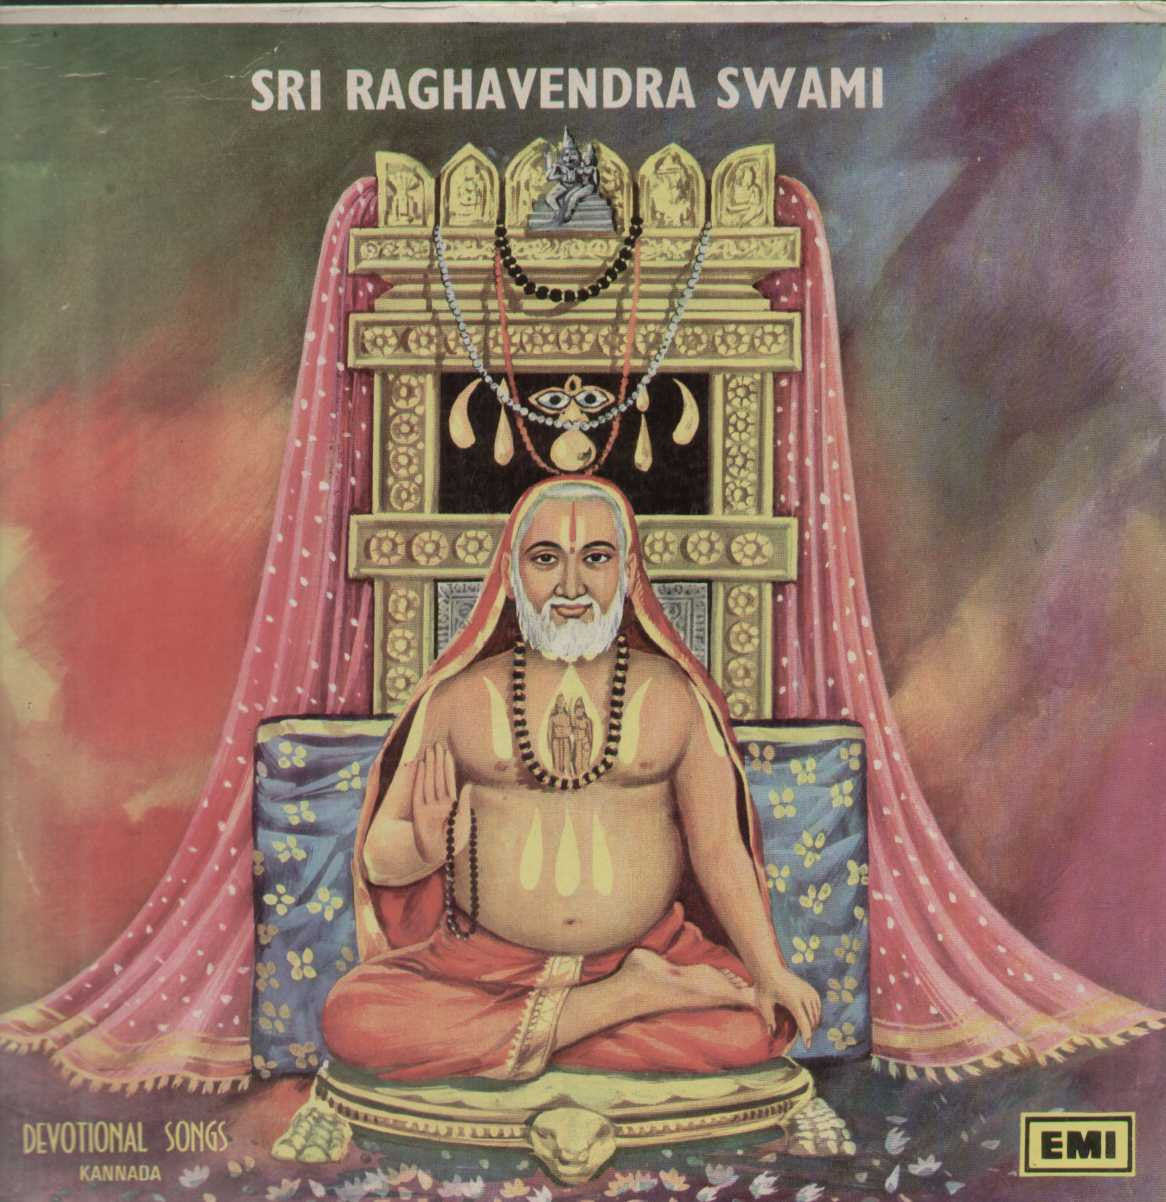 Sri Raghavendra Swami 1976 Kannada Vinyl LP – BollywoodVinyl